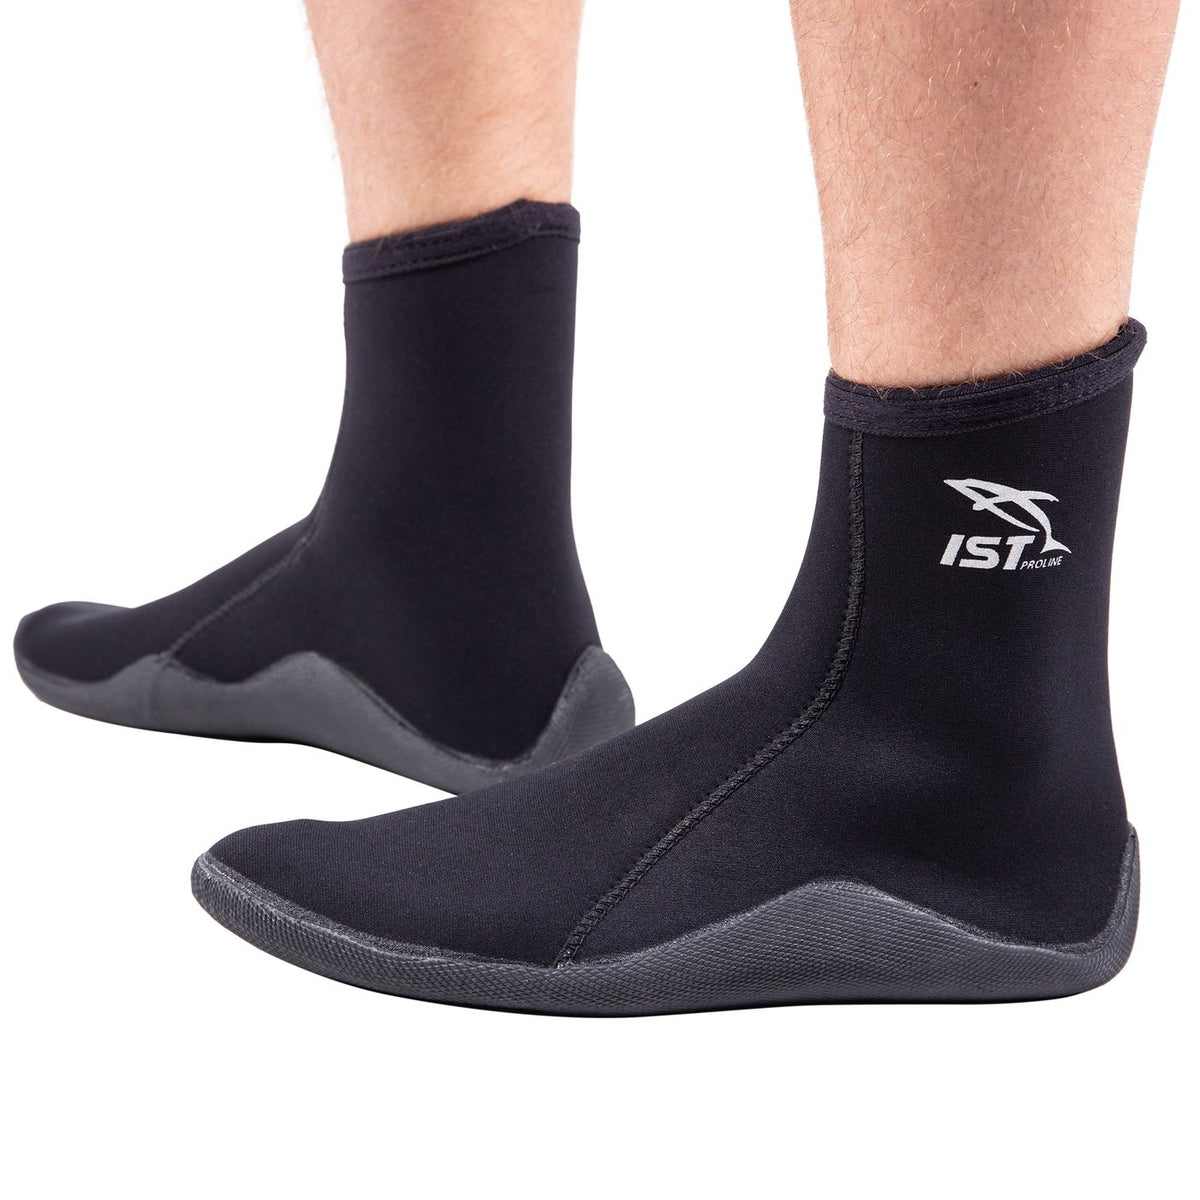 NEO3.0 neoprene socks